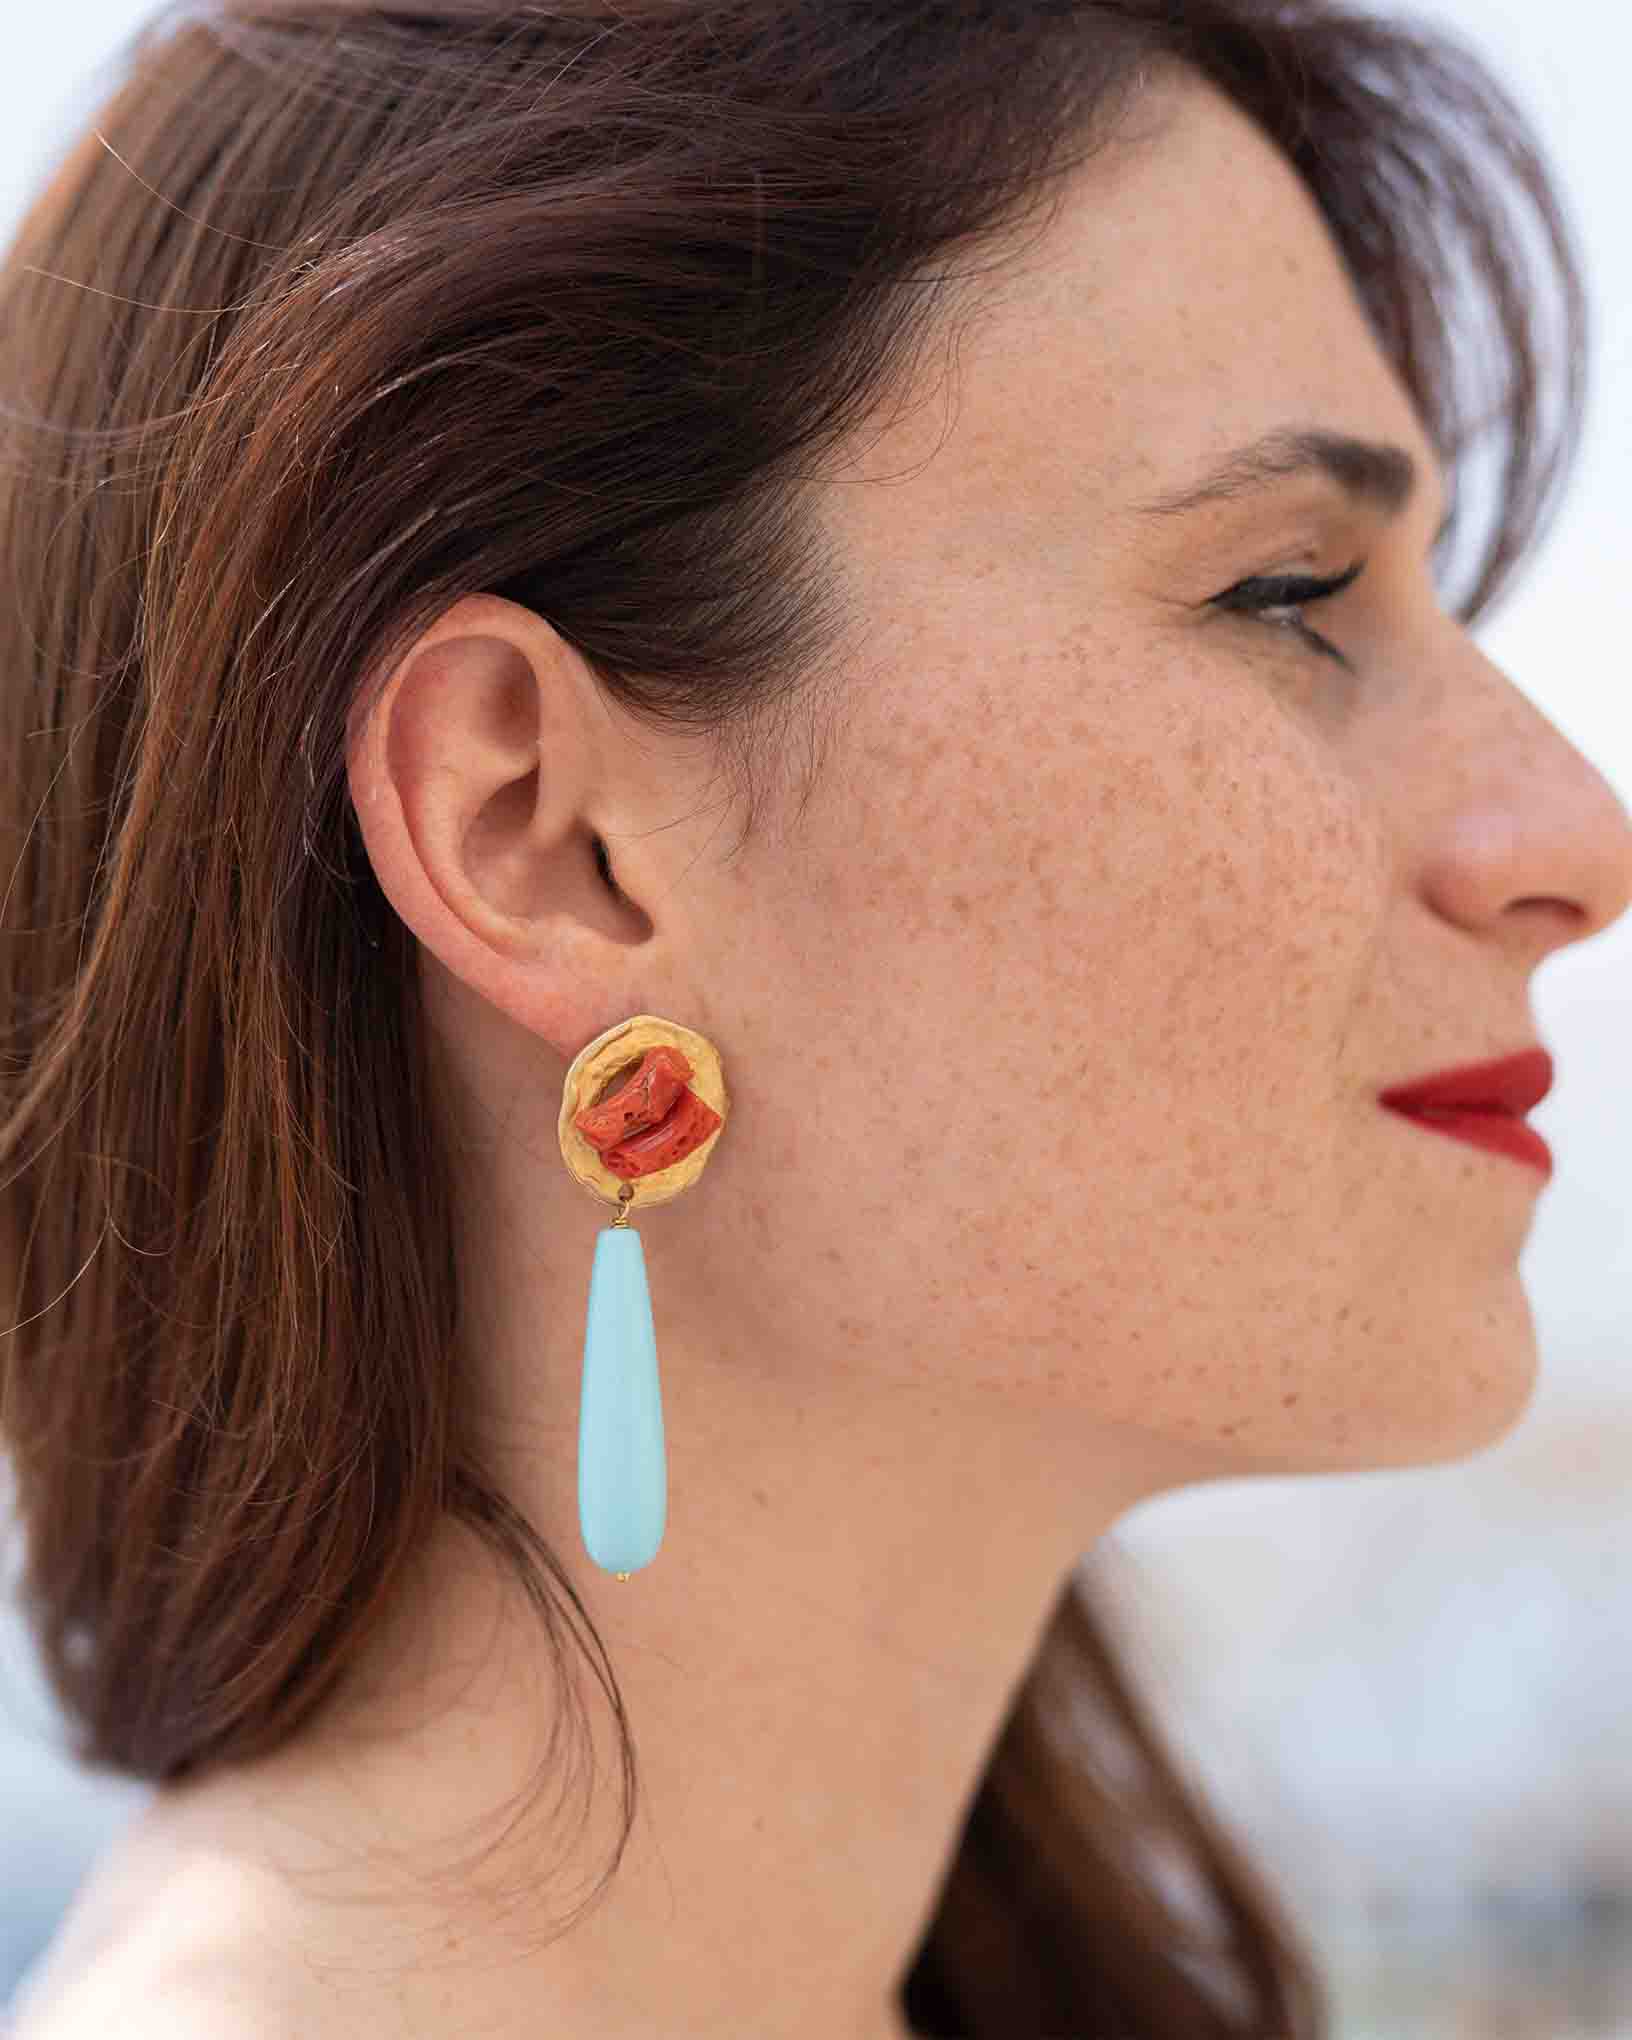 Ohrring Maestrale aus der Kollektion Perle e Coralli von Donna Rachele Jewelry